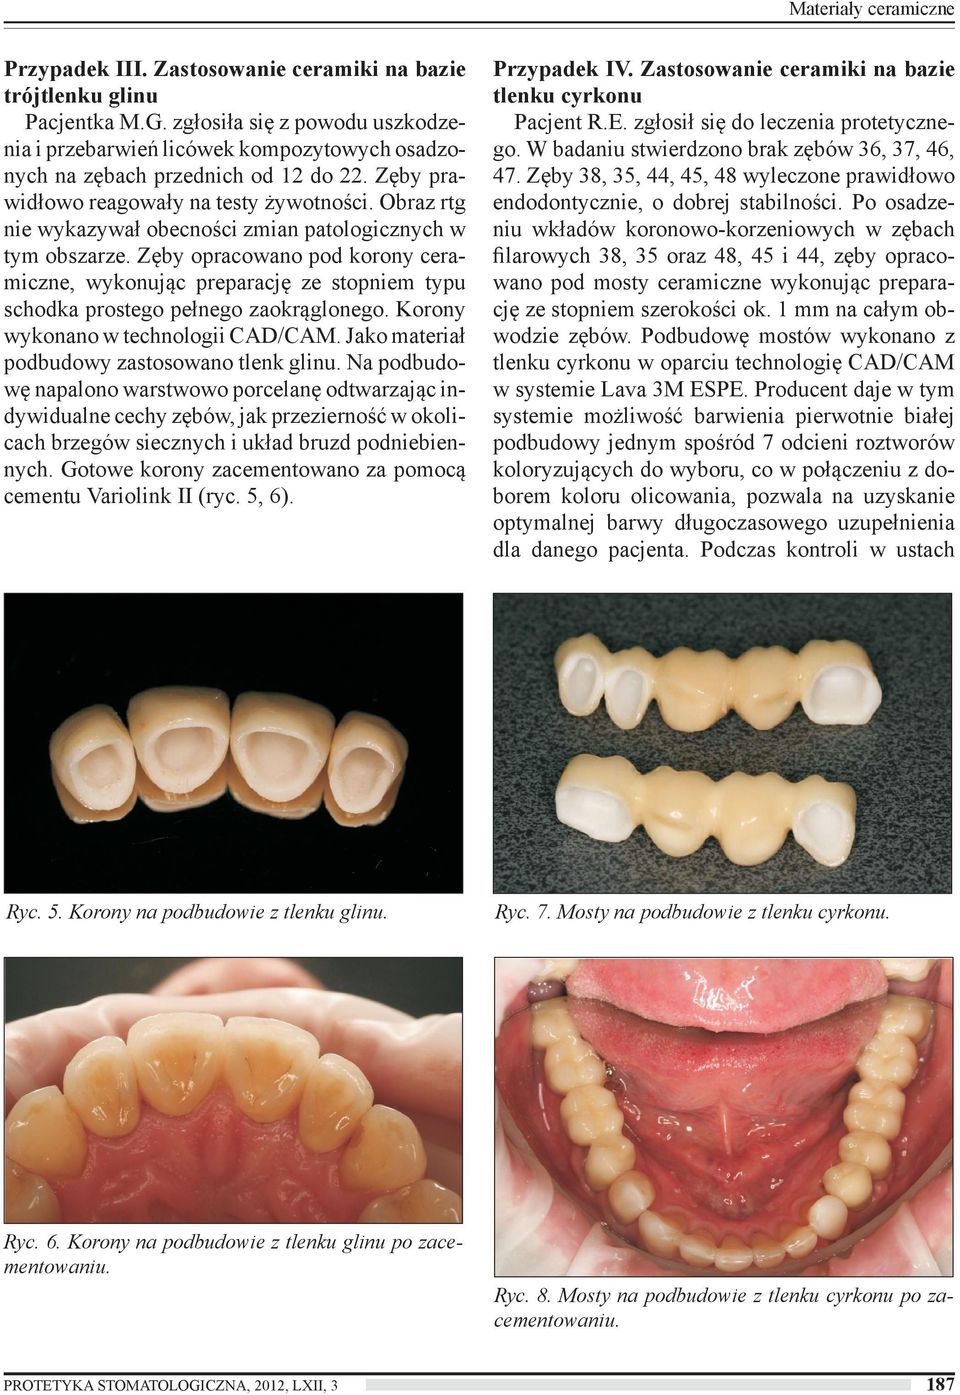 Obraz rtg nie wykazywał obecności zmian patologicznych w tym obszarze. Zęby opracowano pod korony ceramiczne, wykonując preparację ze stopniem typu schodka prostego pełnego zaokrąglonego.